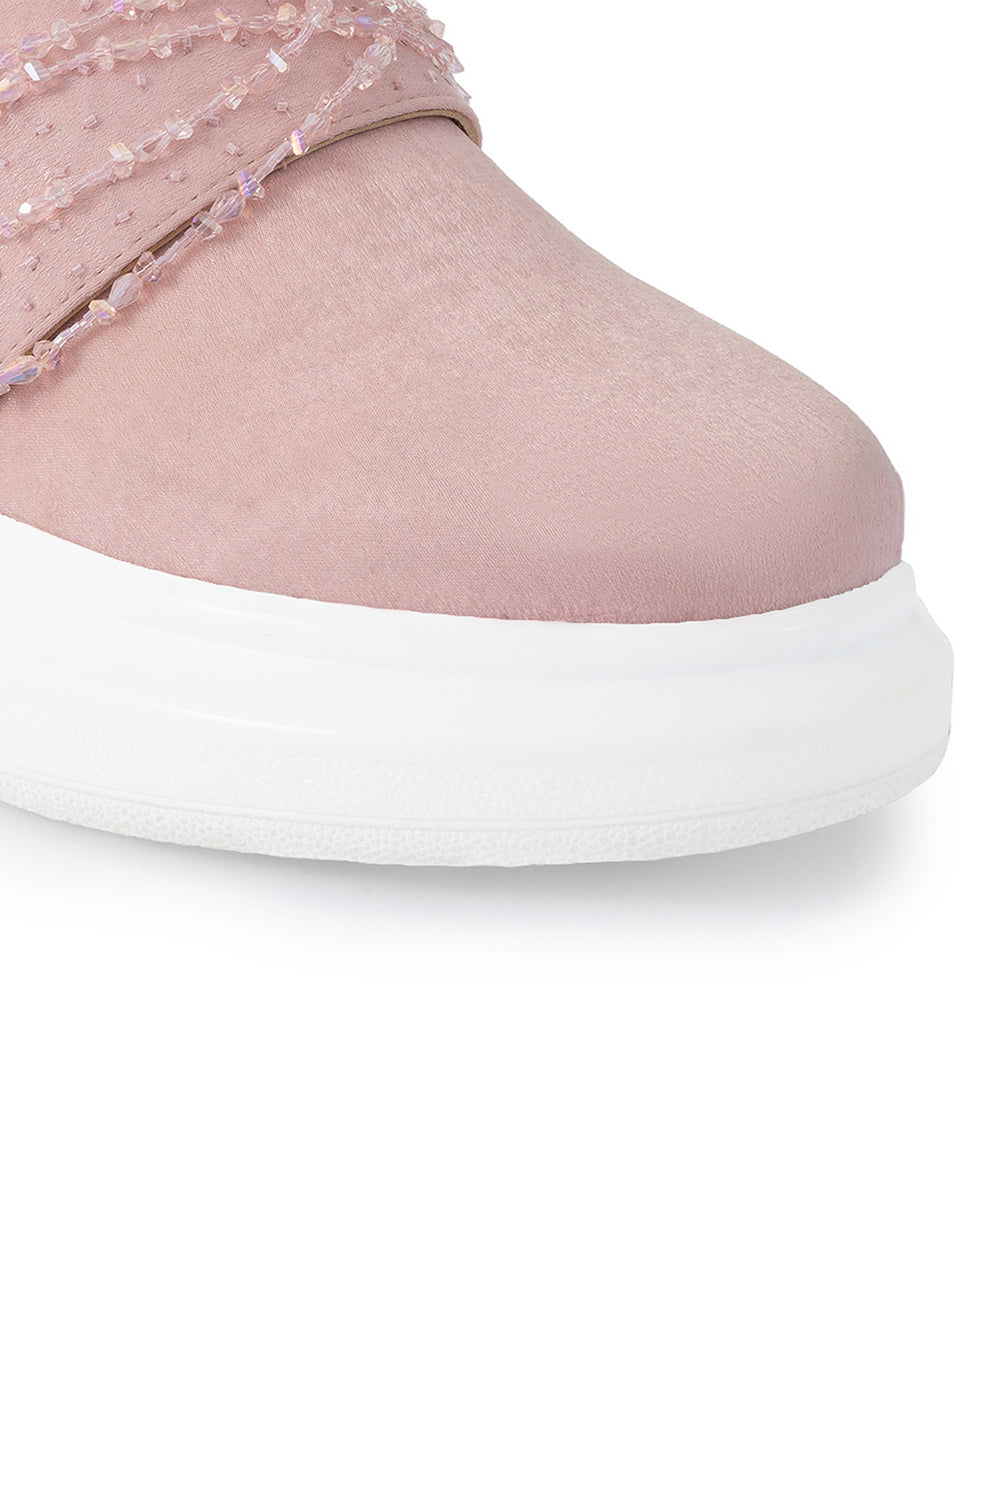 Pink Sweet Talk Wedge Sneakers